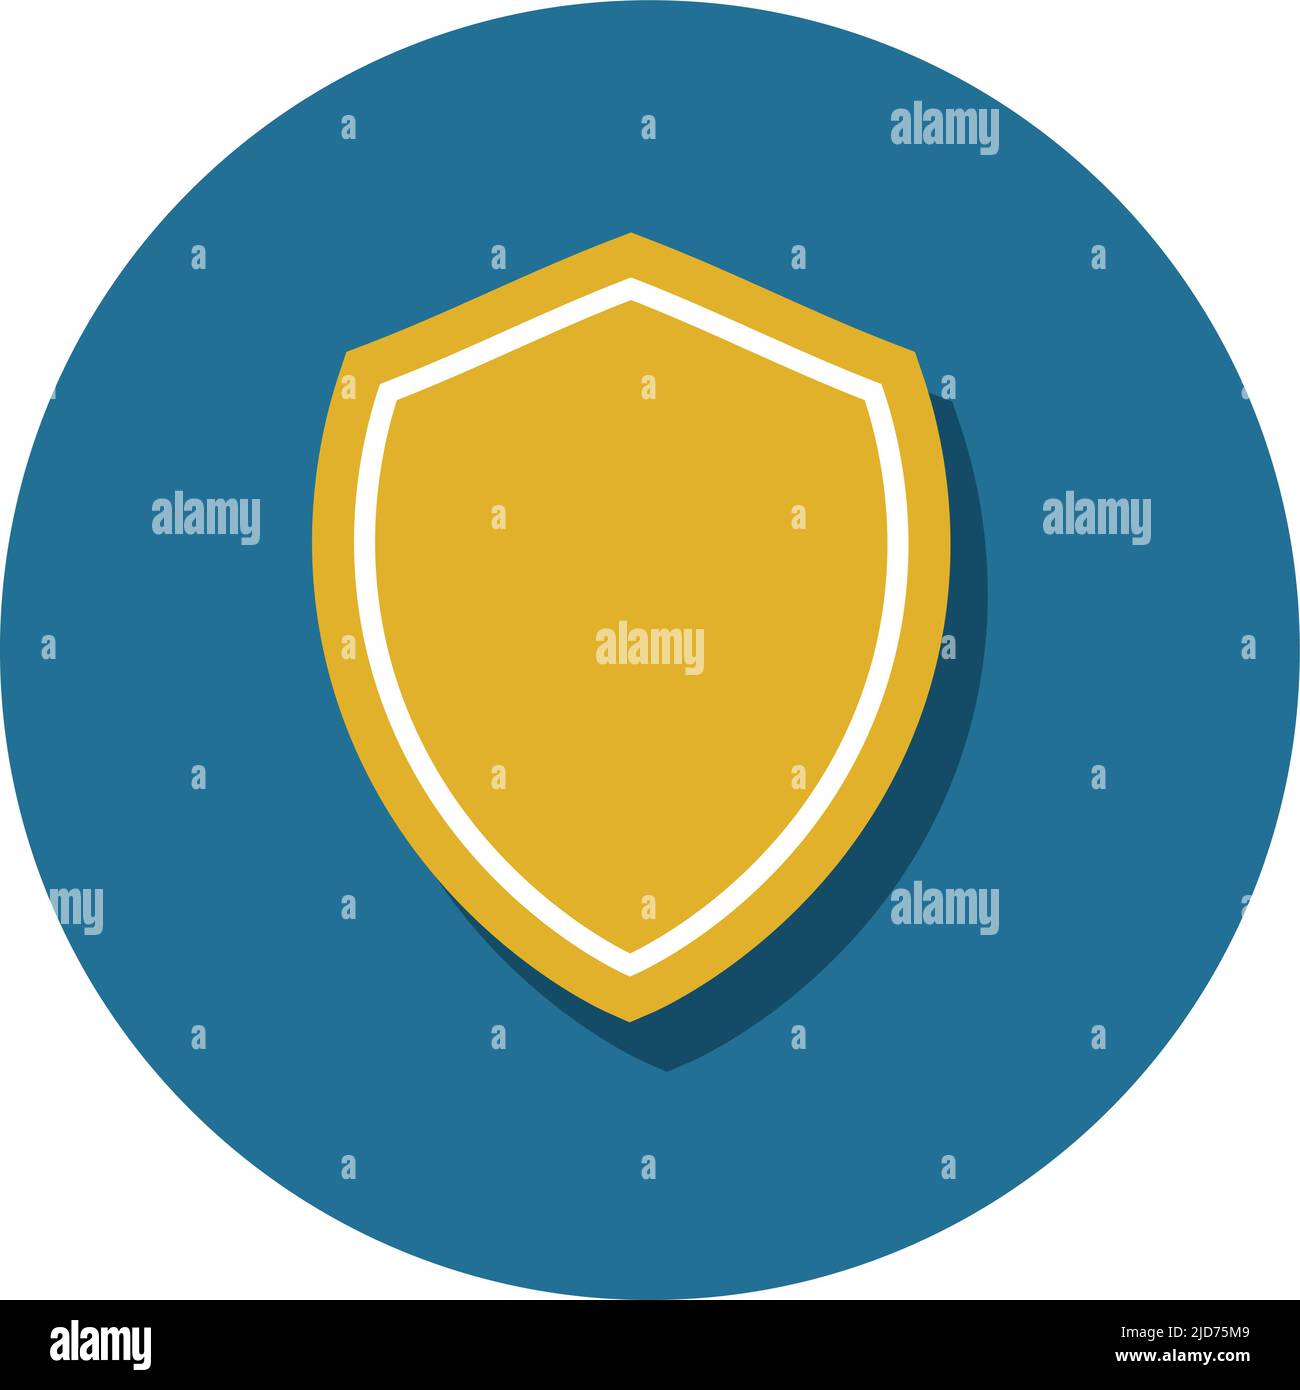 Trust Shield Icon, Konzept für Datenschutz, Schutz und Sicherheit in Technologie und Internet Stock Vektor